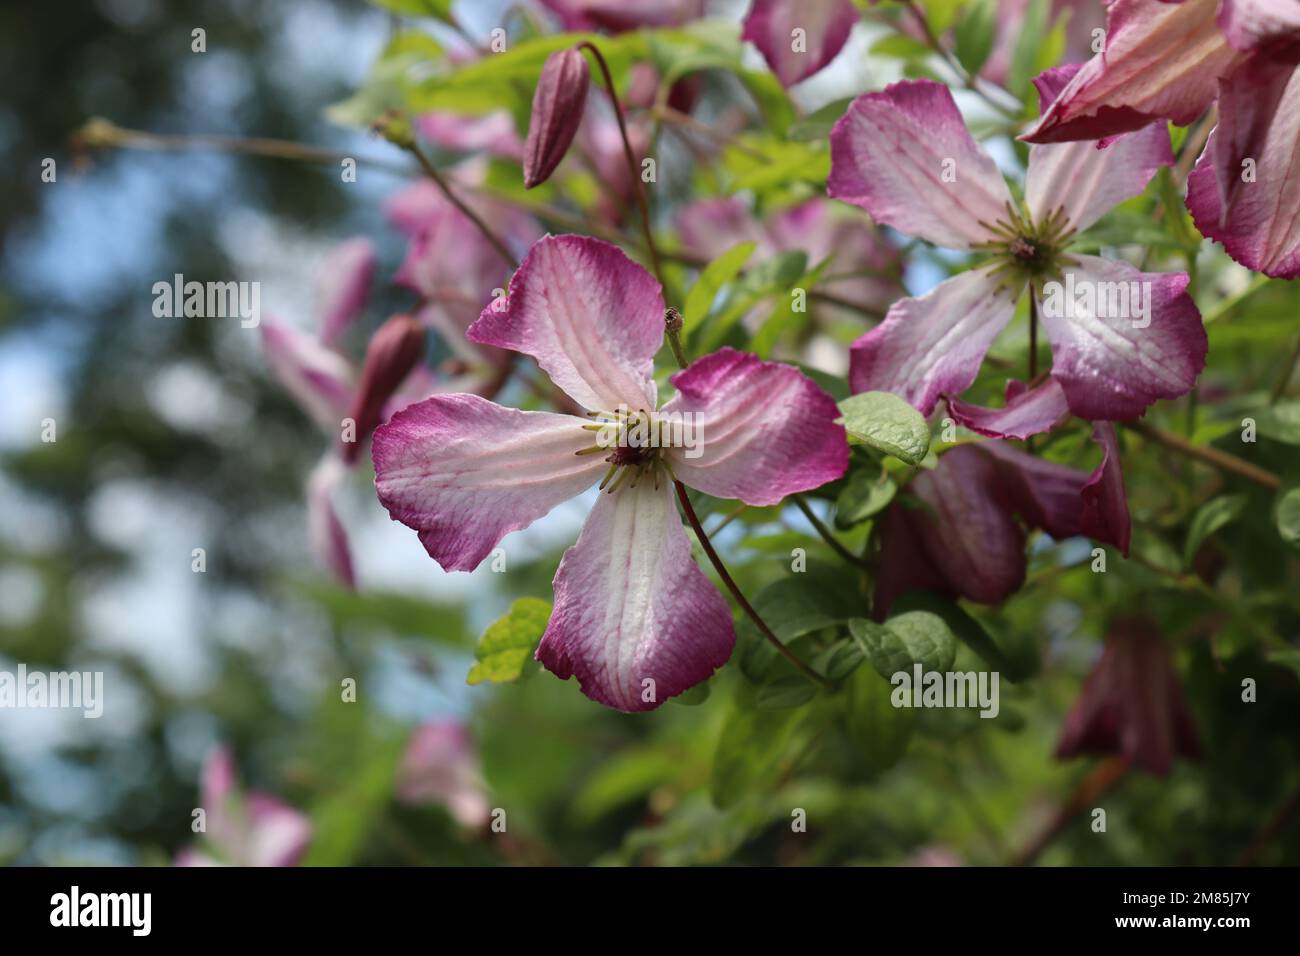 Die wunderschönen Sommerblumen der Kletterpflanze Clematis viticella „Minuet“. Eine Ansammlung weißer und rosafarbener Blüten mit einem Kopierbereich auf der linken Seite. Stockfoto